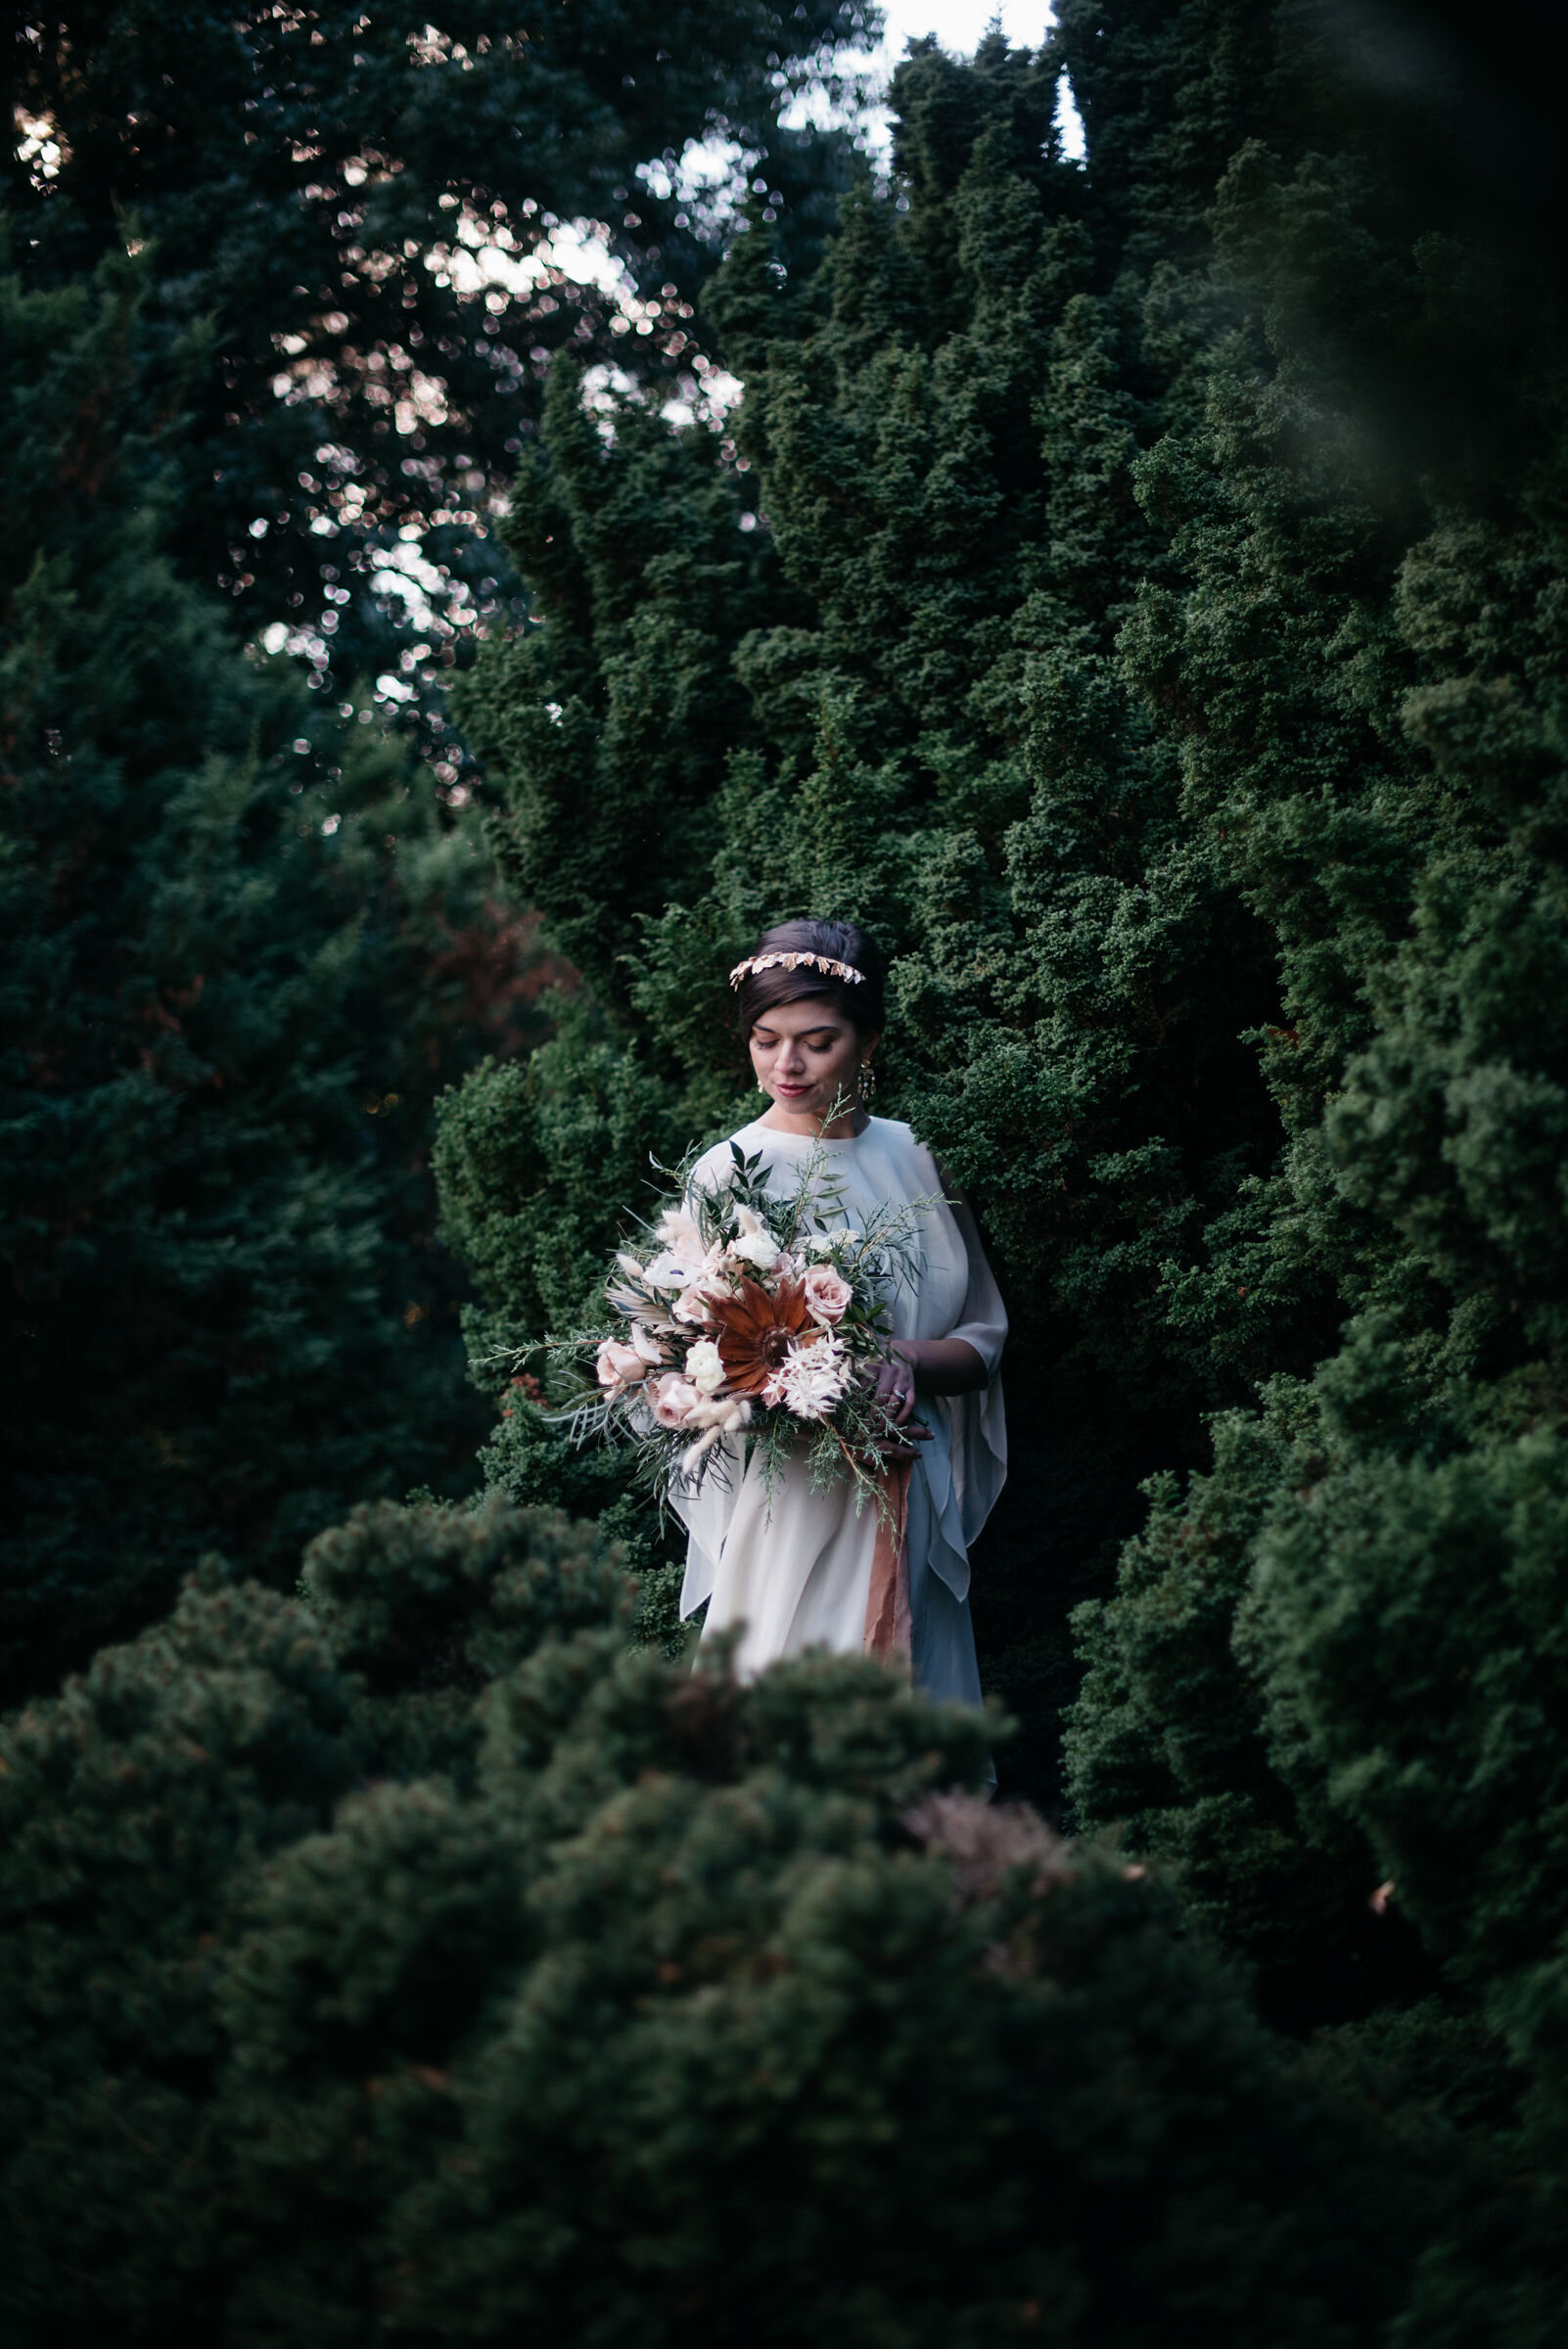 Botanica-winter wedding-bridal bouquet-yew dell gardens wedding-louisville wedding florist.jpg